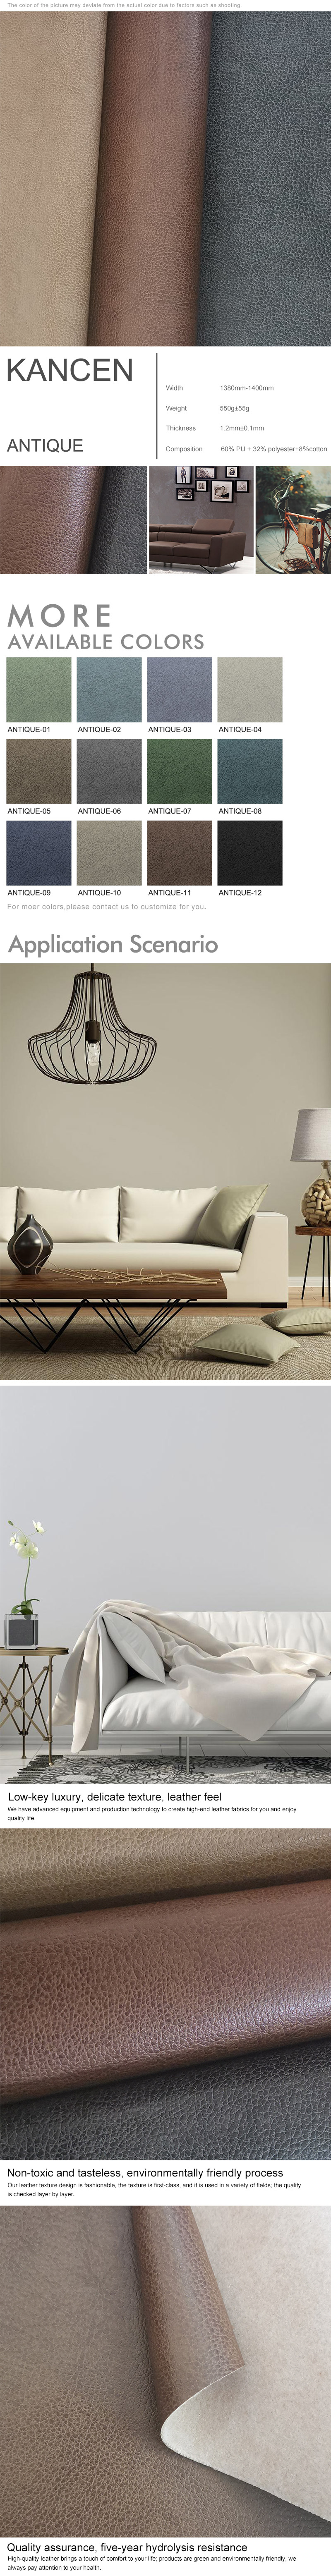 Commercial Sofa Leather design - KANCEN